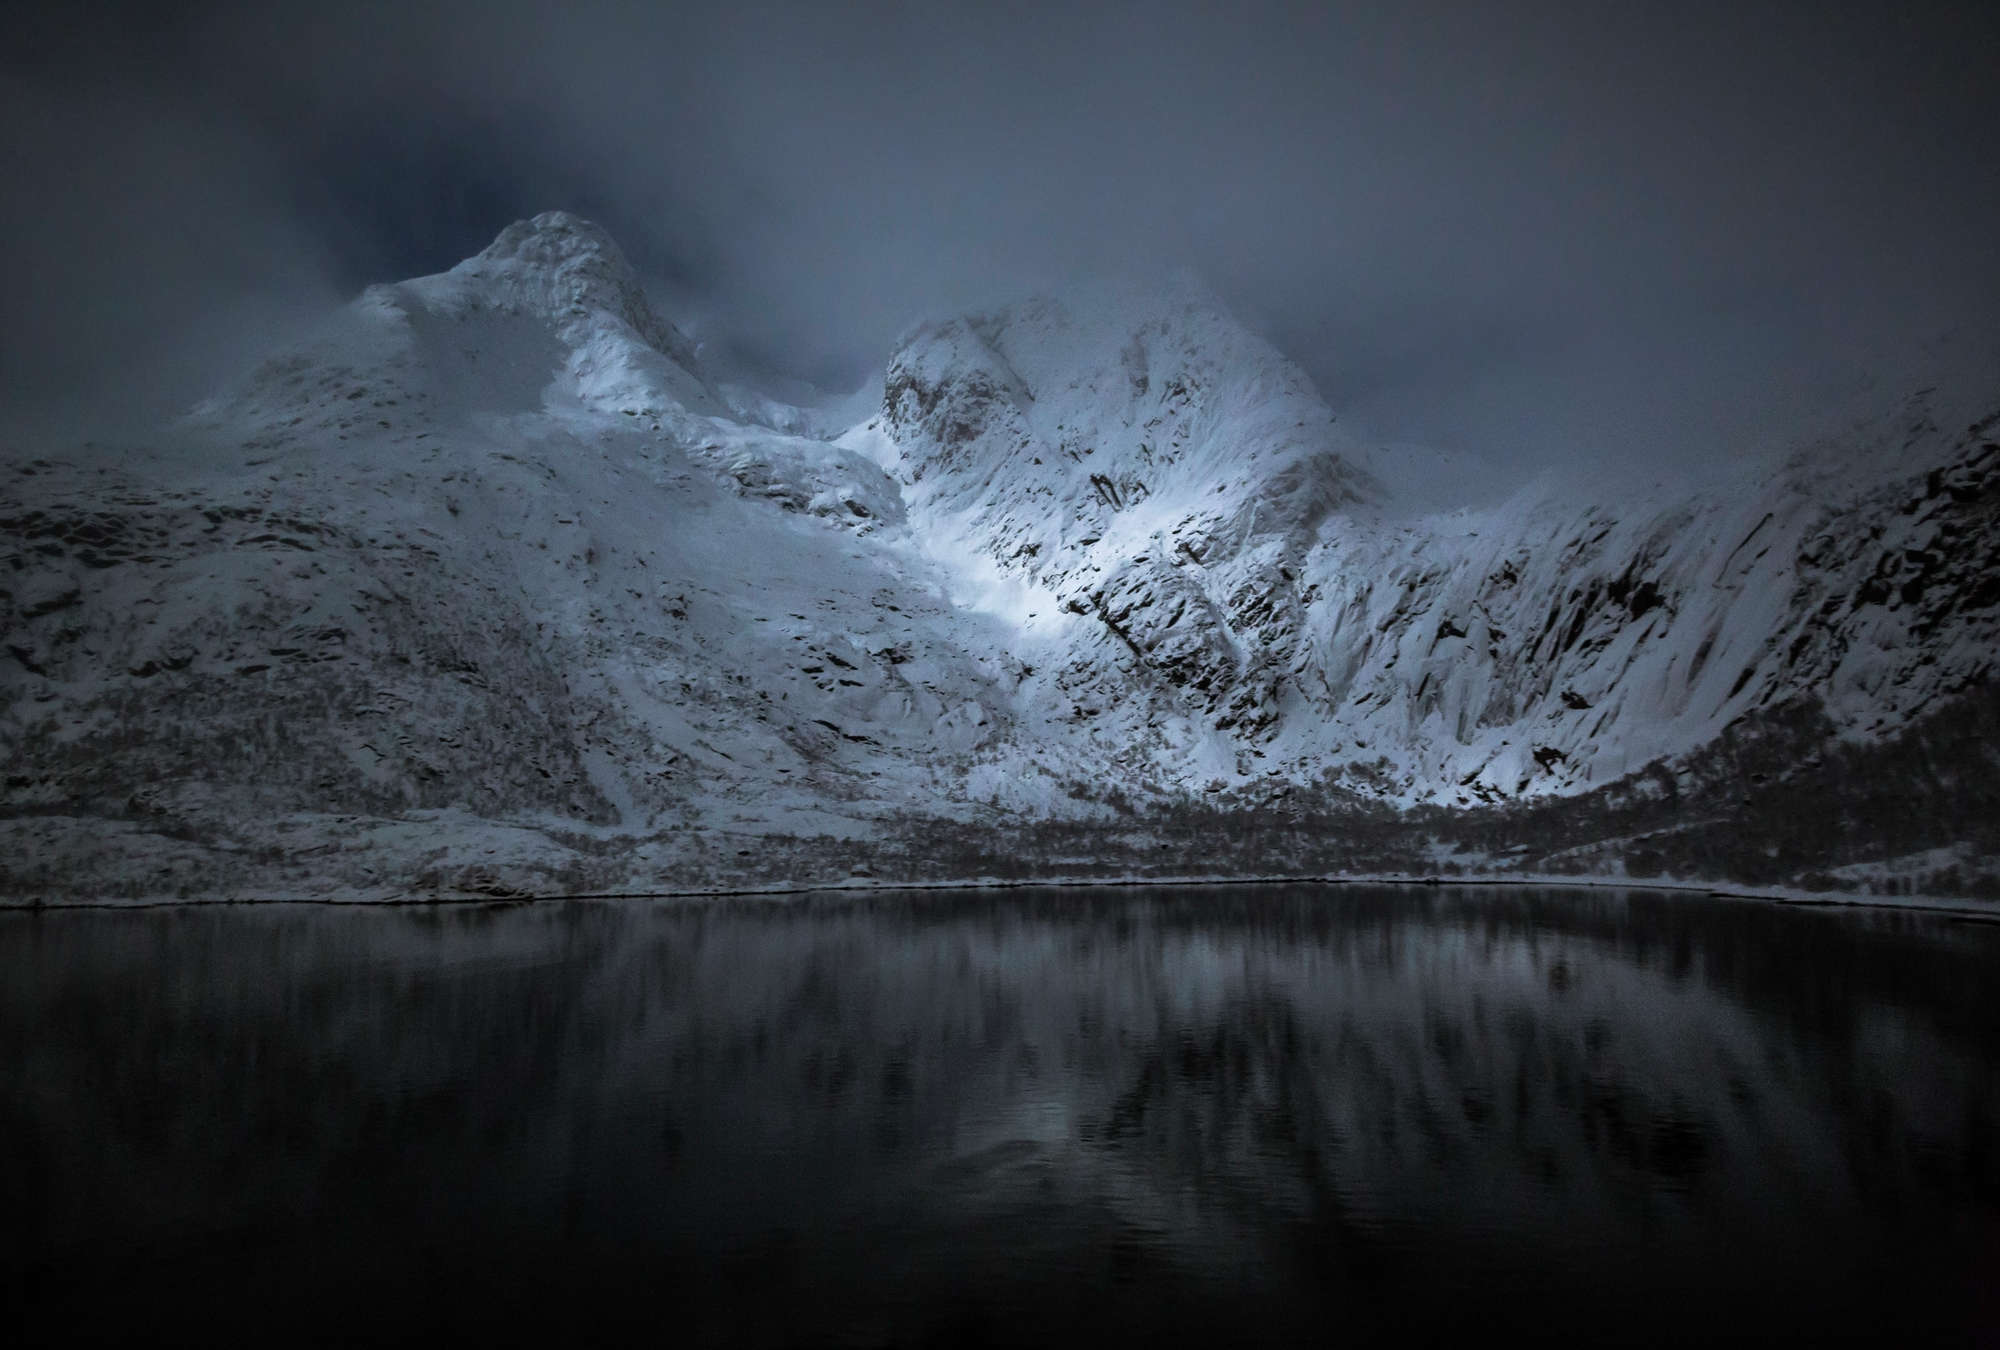             Papel Pintado Montañas y Mar - Lofoten en Noruega de noche
        